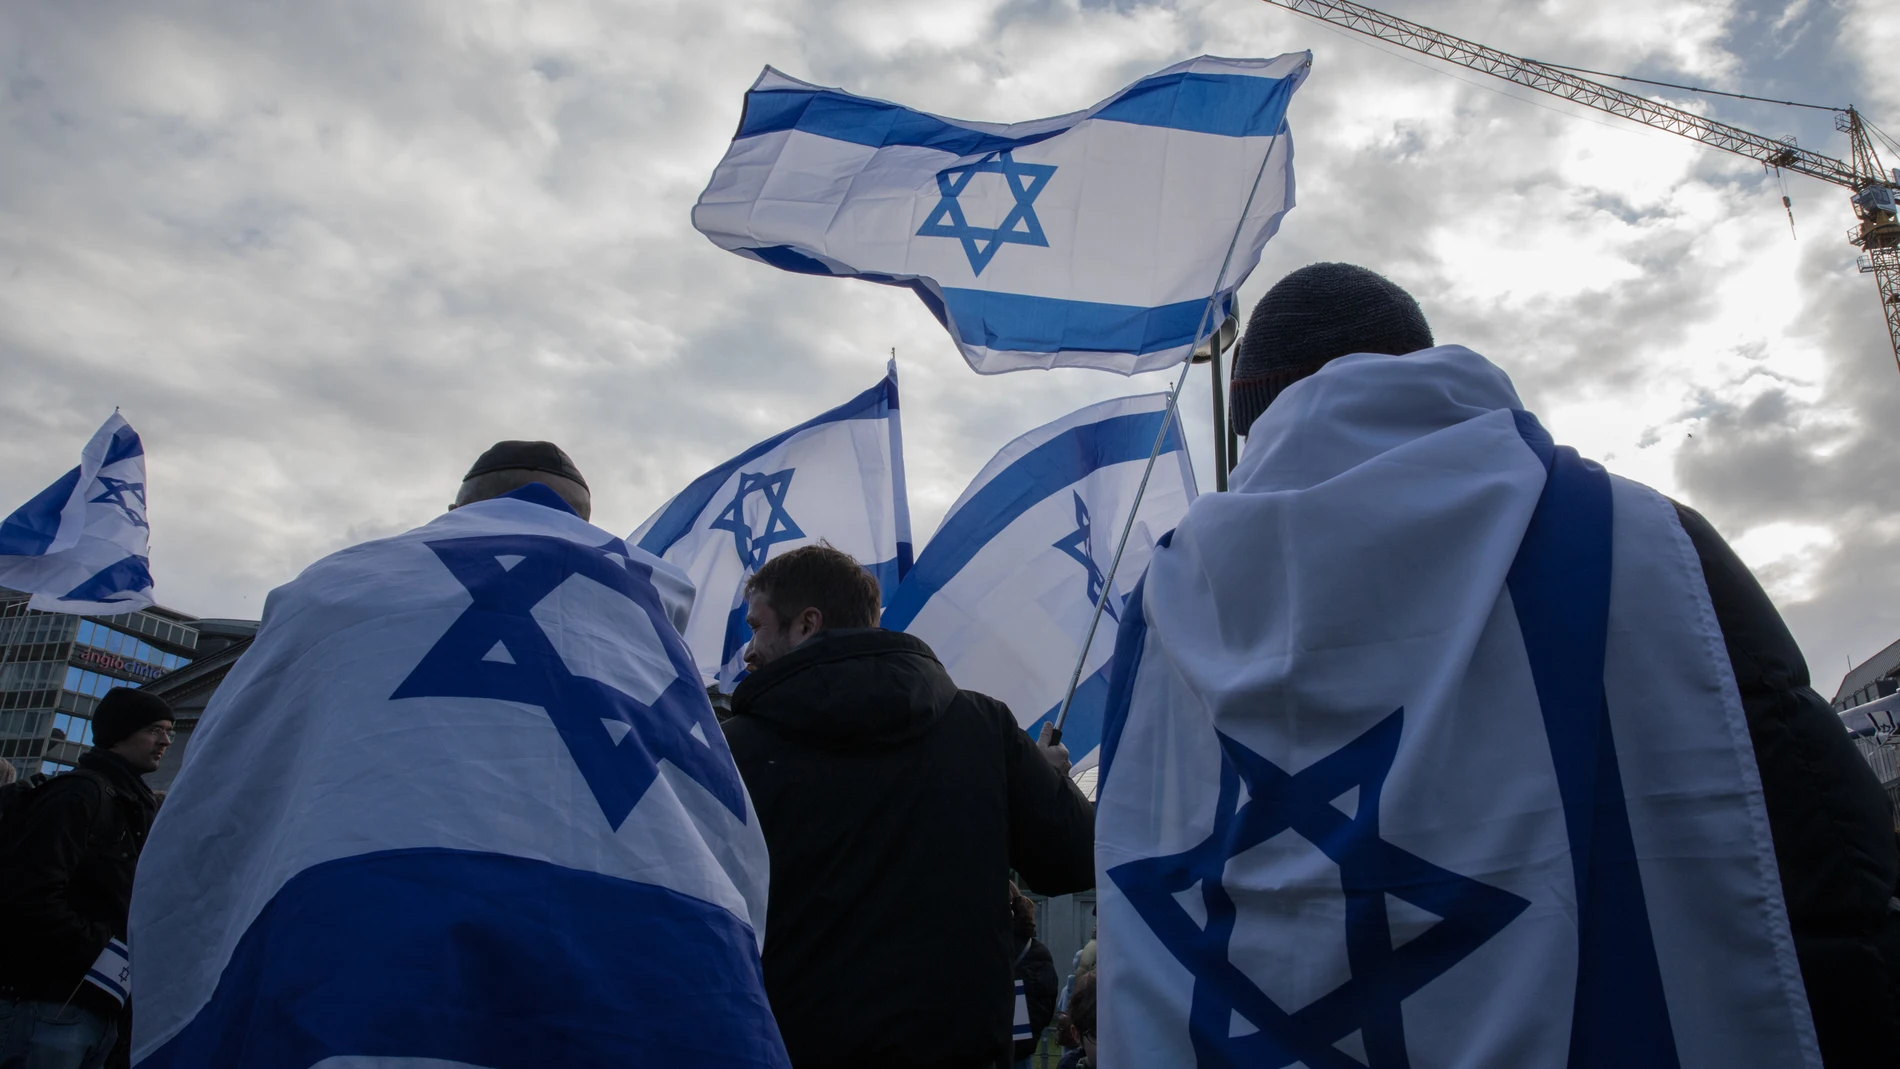 Alemania.- El estado alemán de Sajonia-Anhalt pedirá a los solicitantes de nacionalidad un escrito apoyando a Israel